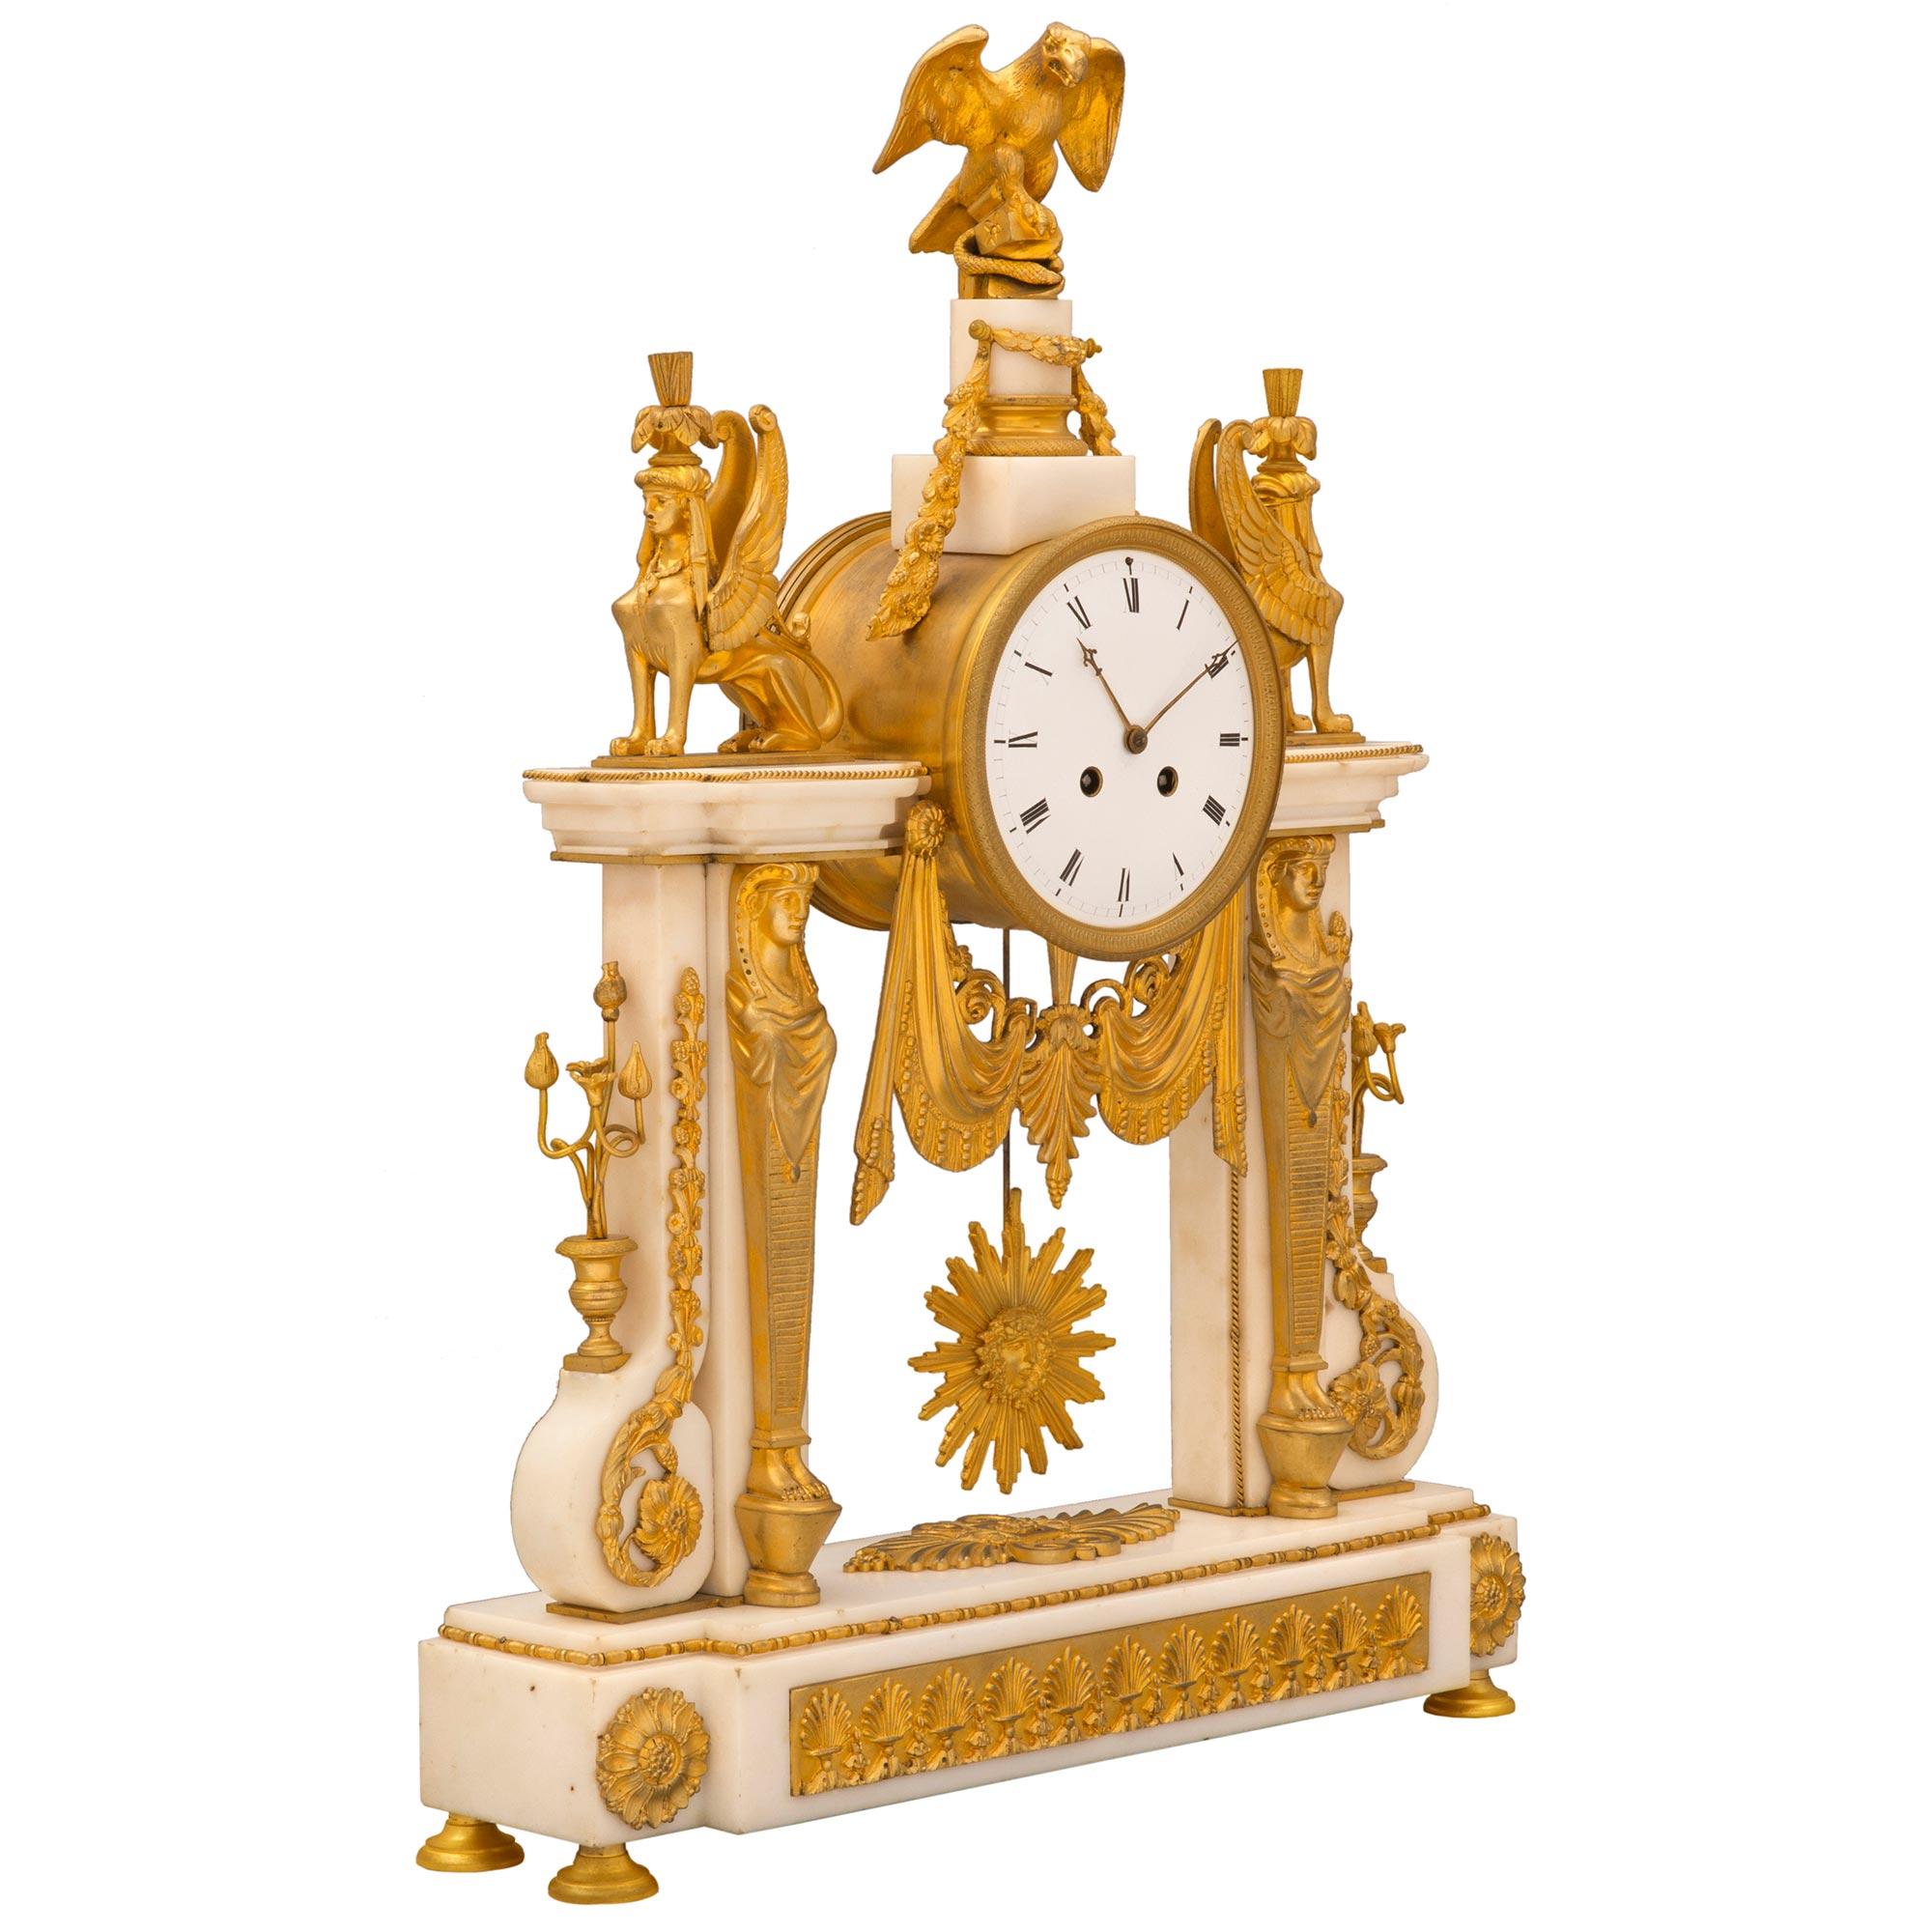 Eine atemberaubende und hochwertige französische Uhr im neoklassischen Stil des 19. Jahrhunderts aus Ormolu und weißem Carrara-Marmor. Die Uhr steht auf feinen, kreisförmigen, gesprenkelten Ormolu-Füßen unter dem massiven Sockel aus weißem